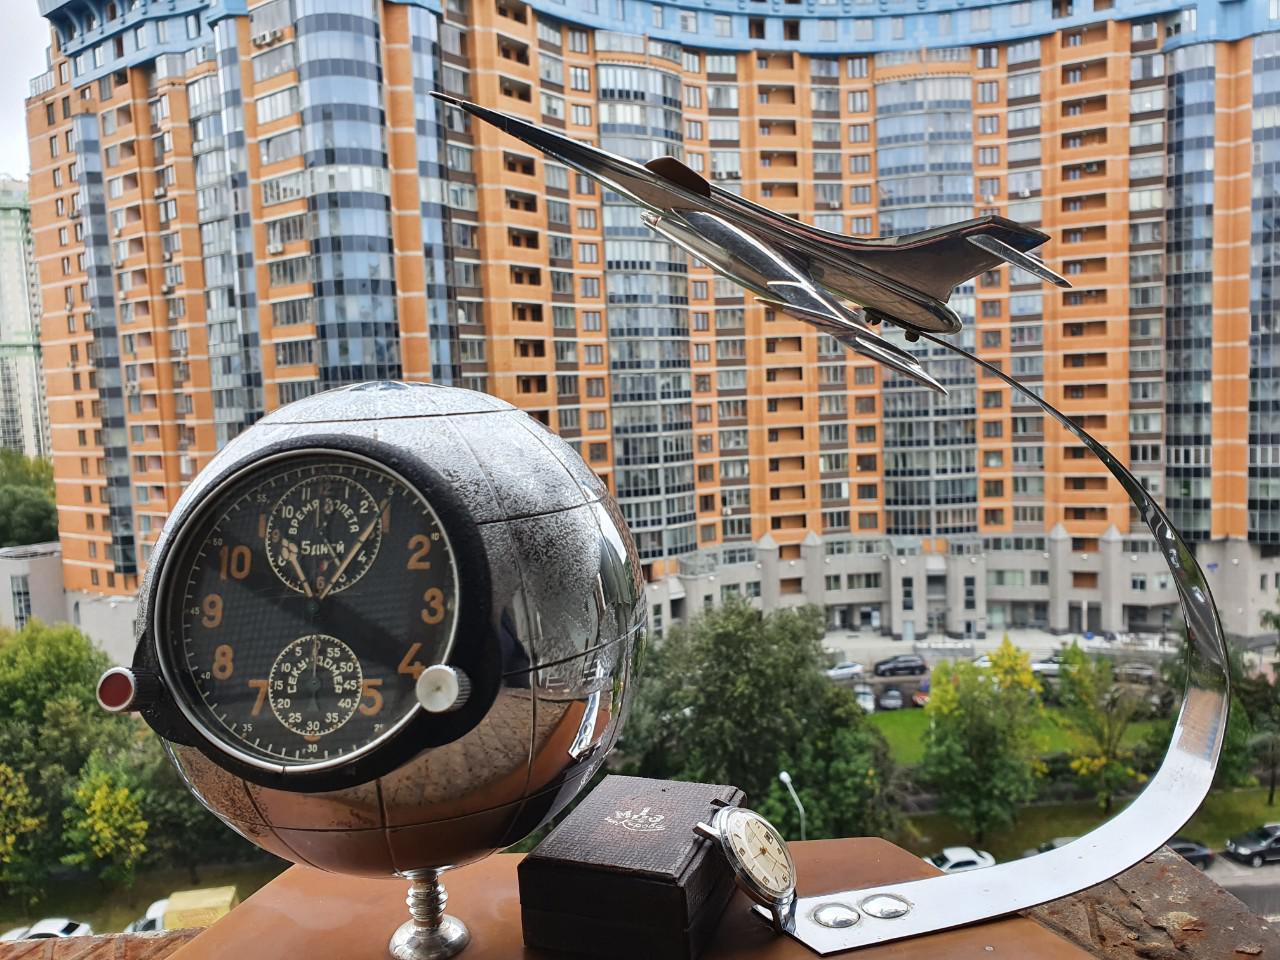 Mô hình máy bay đánh chặn Su-15 1960 Liên Xô và đồng hồ được lấy ra từ buồng lái máy bay